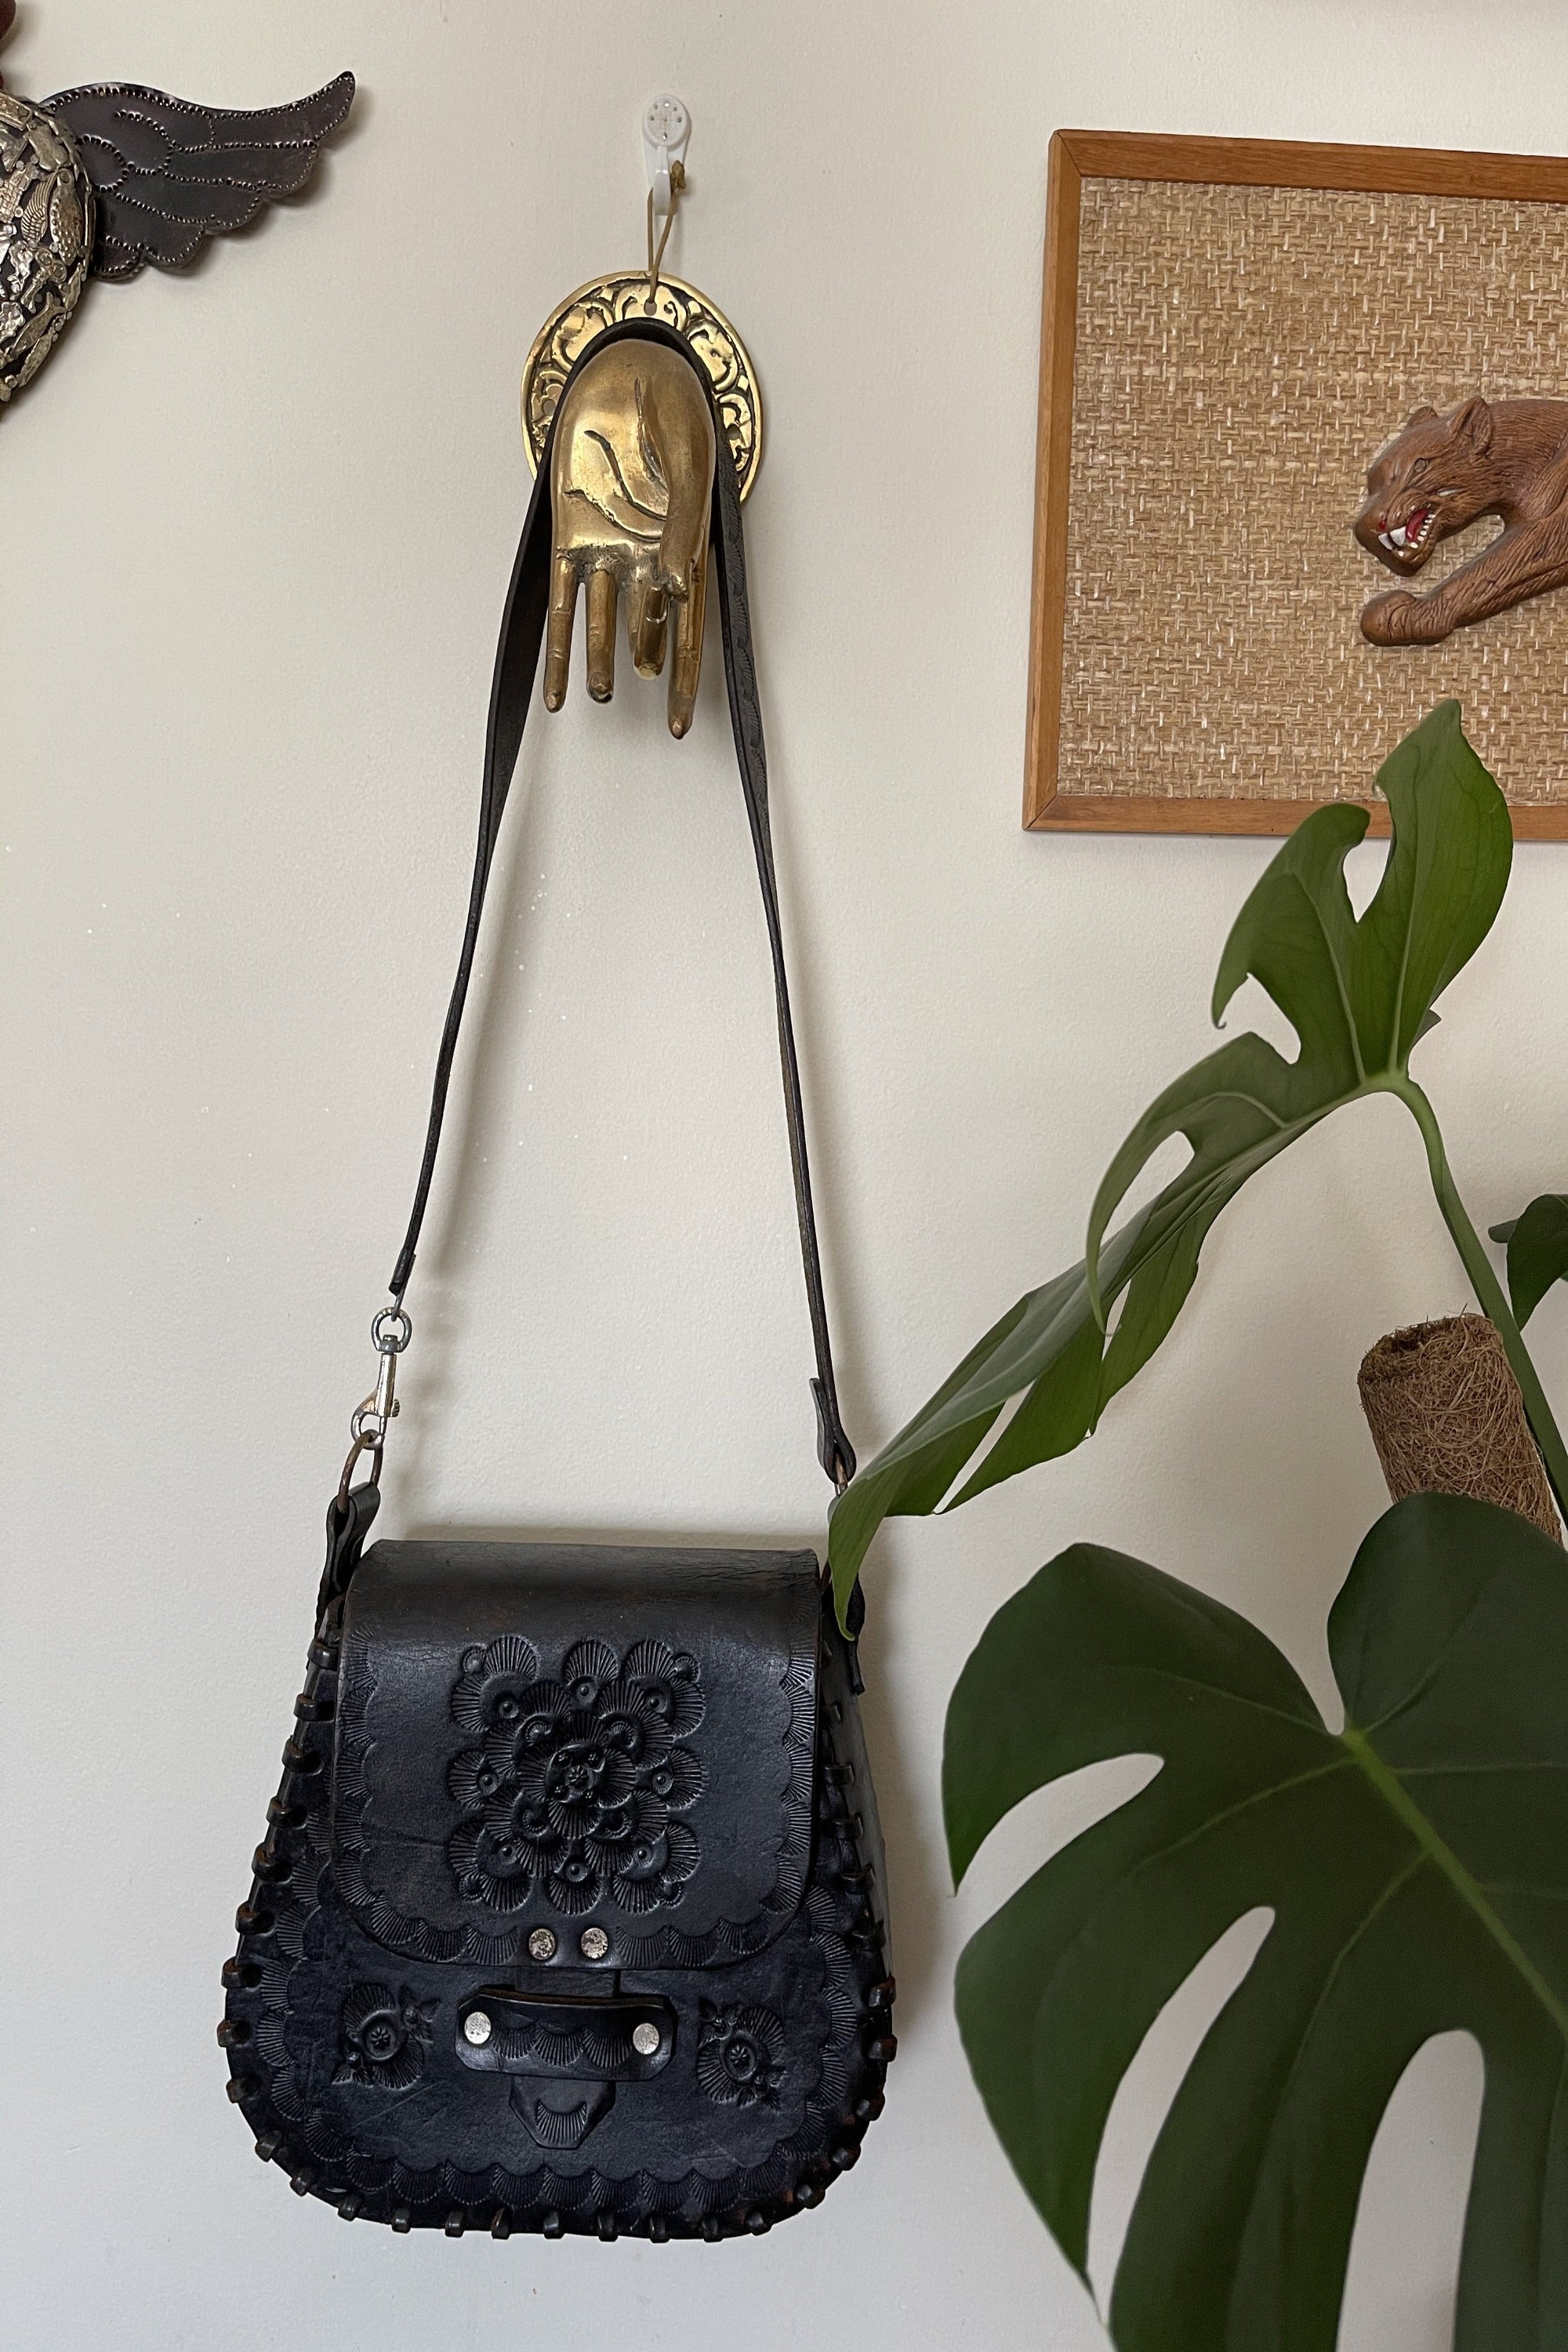 Vintage 1970s Hand Tooled Black Leather Handbag